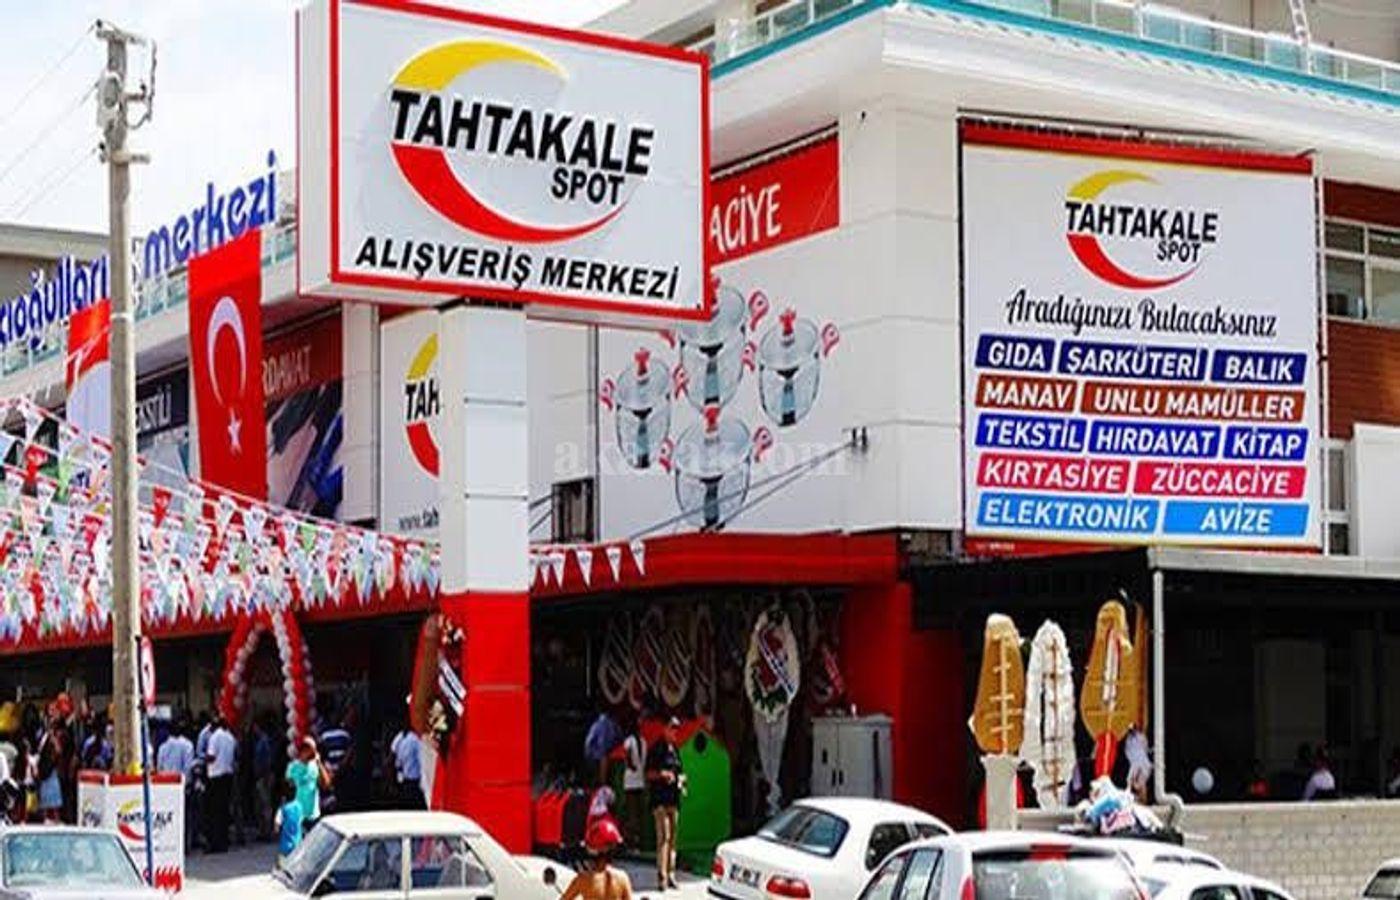 Shop for sale in Antalya Tturkey